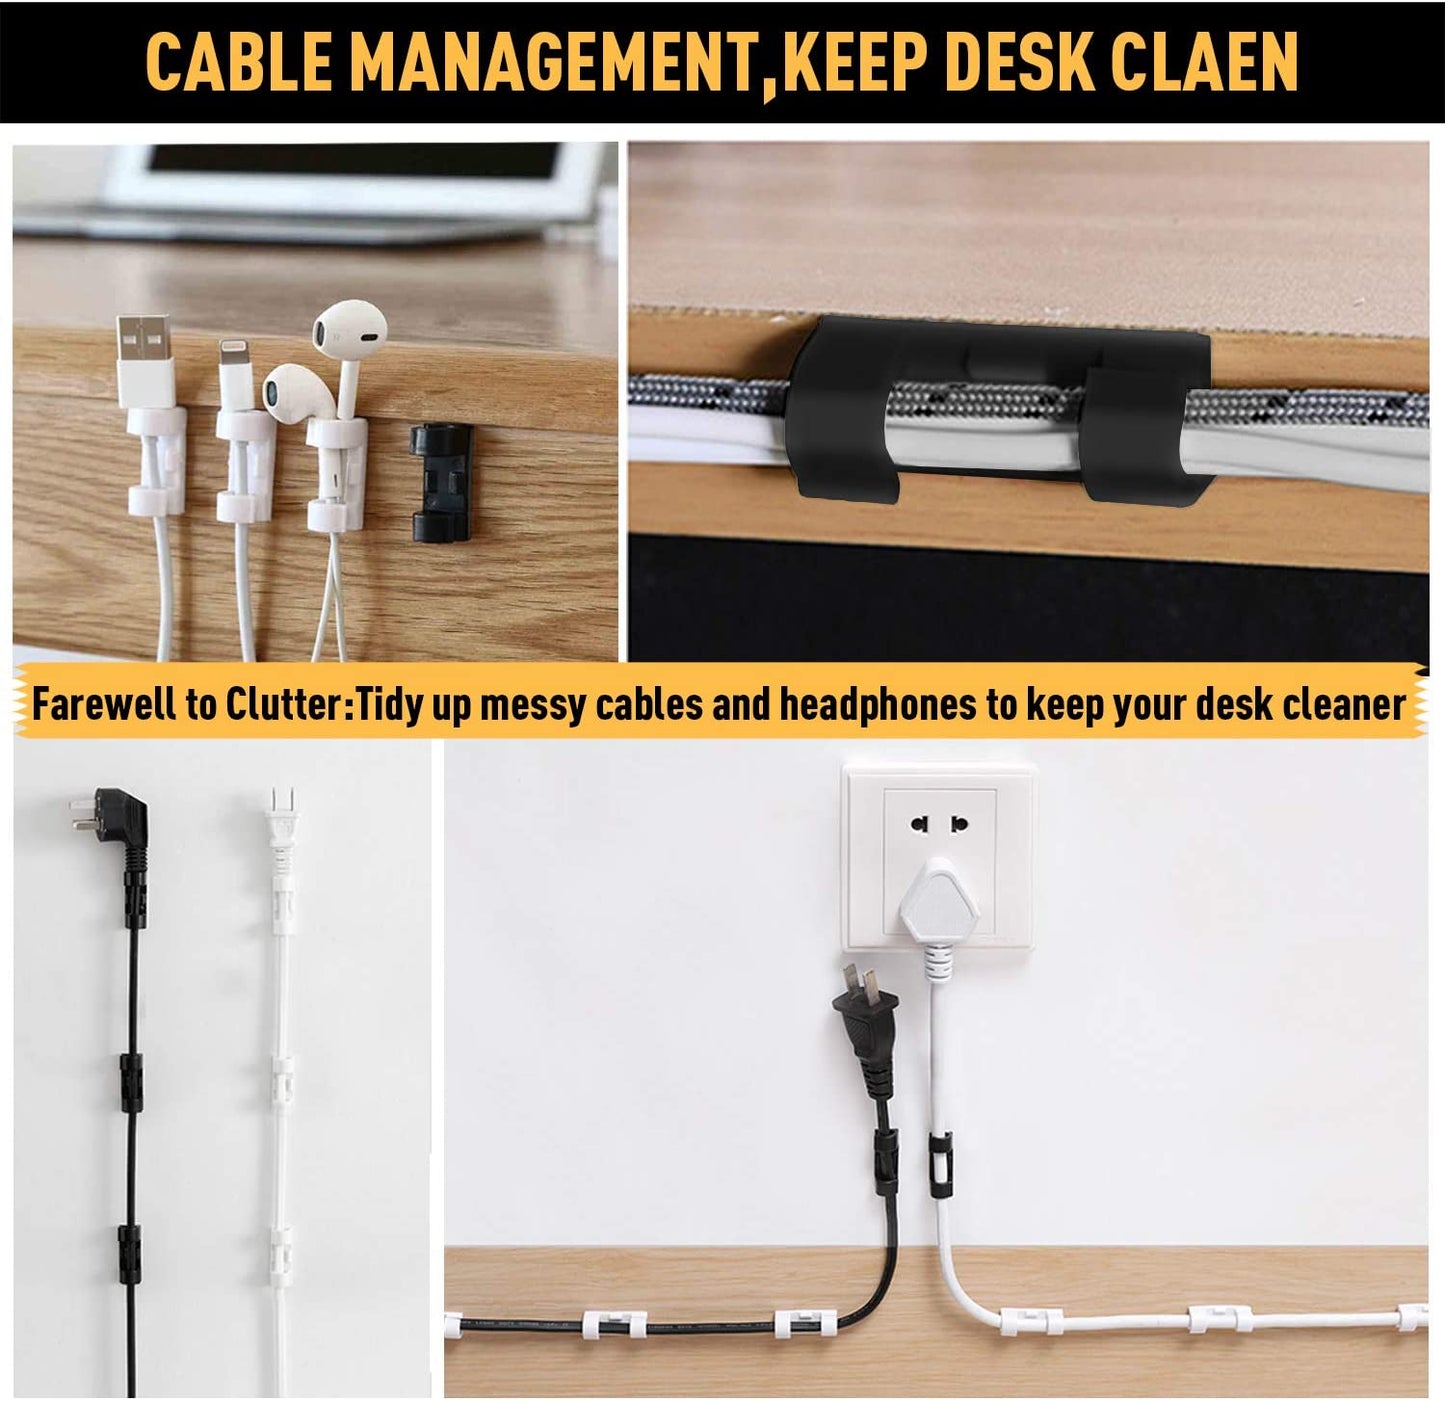 Nosilec kabla, samolepilna sponka za kabel za pod mizo, za organizacijo kablov - 5 kosov